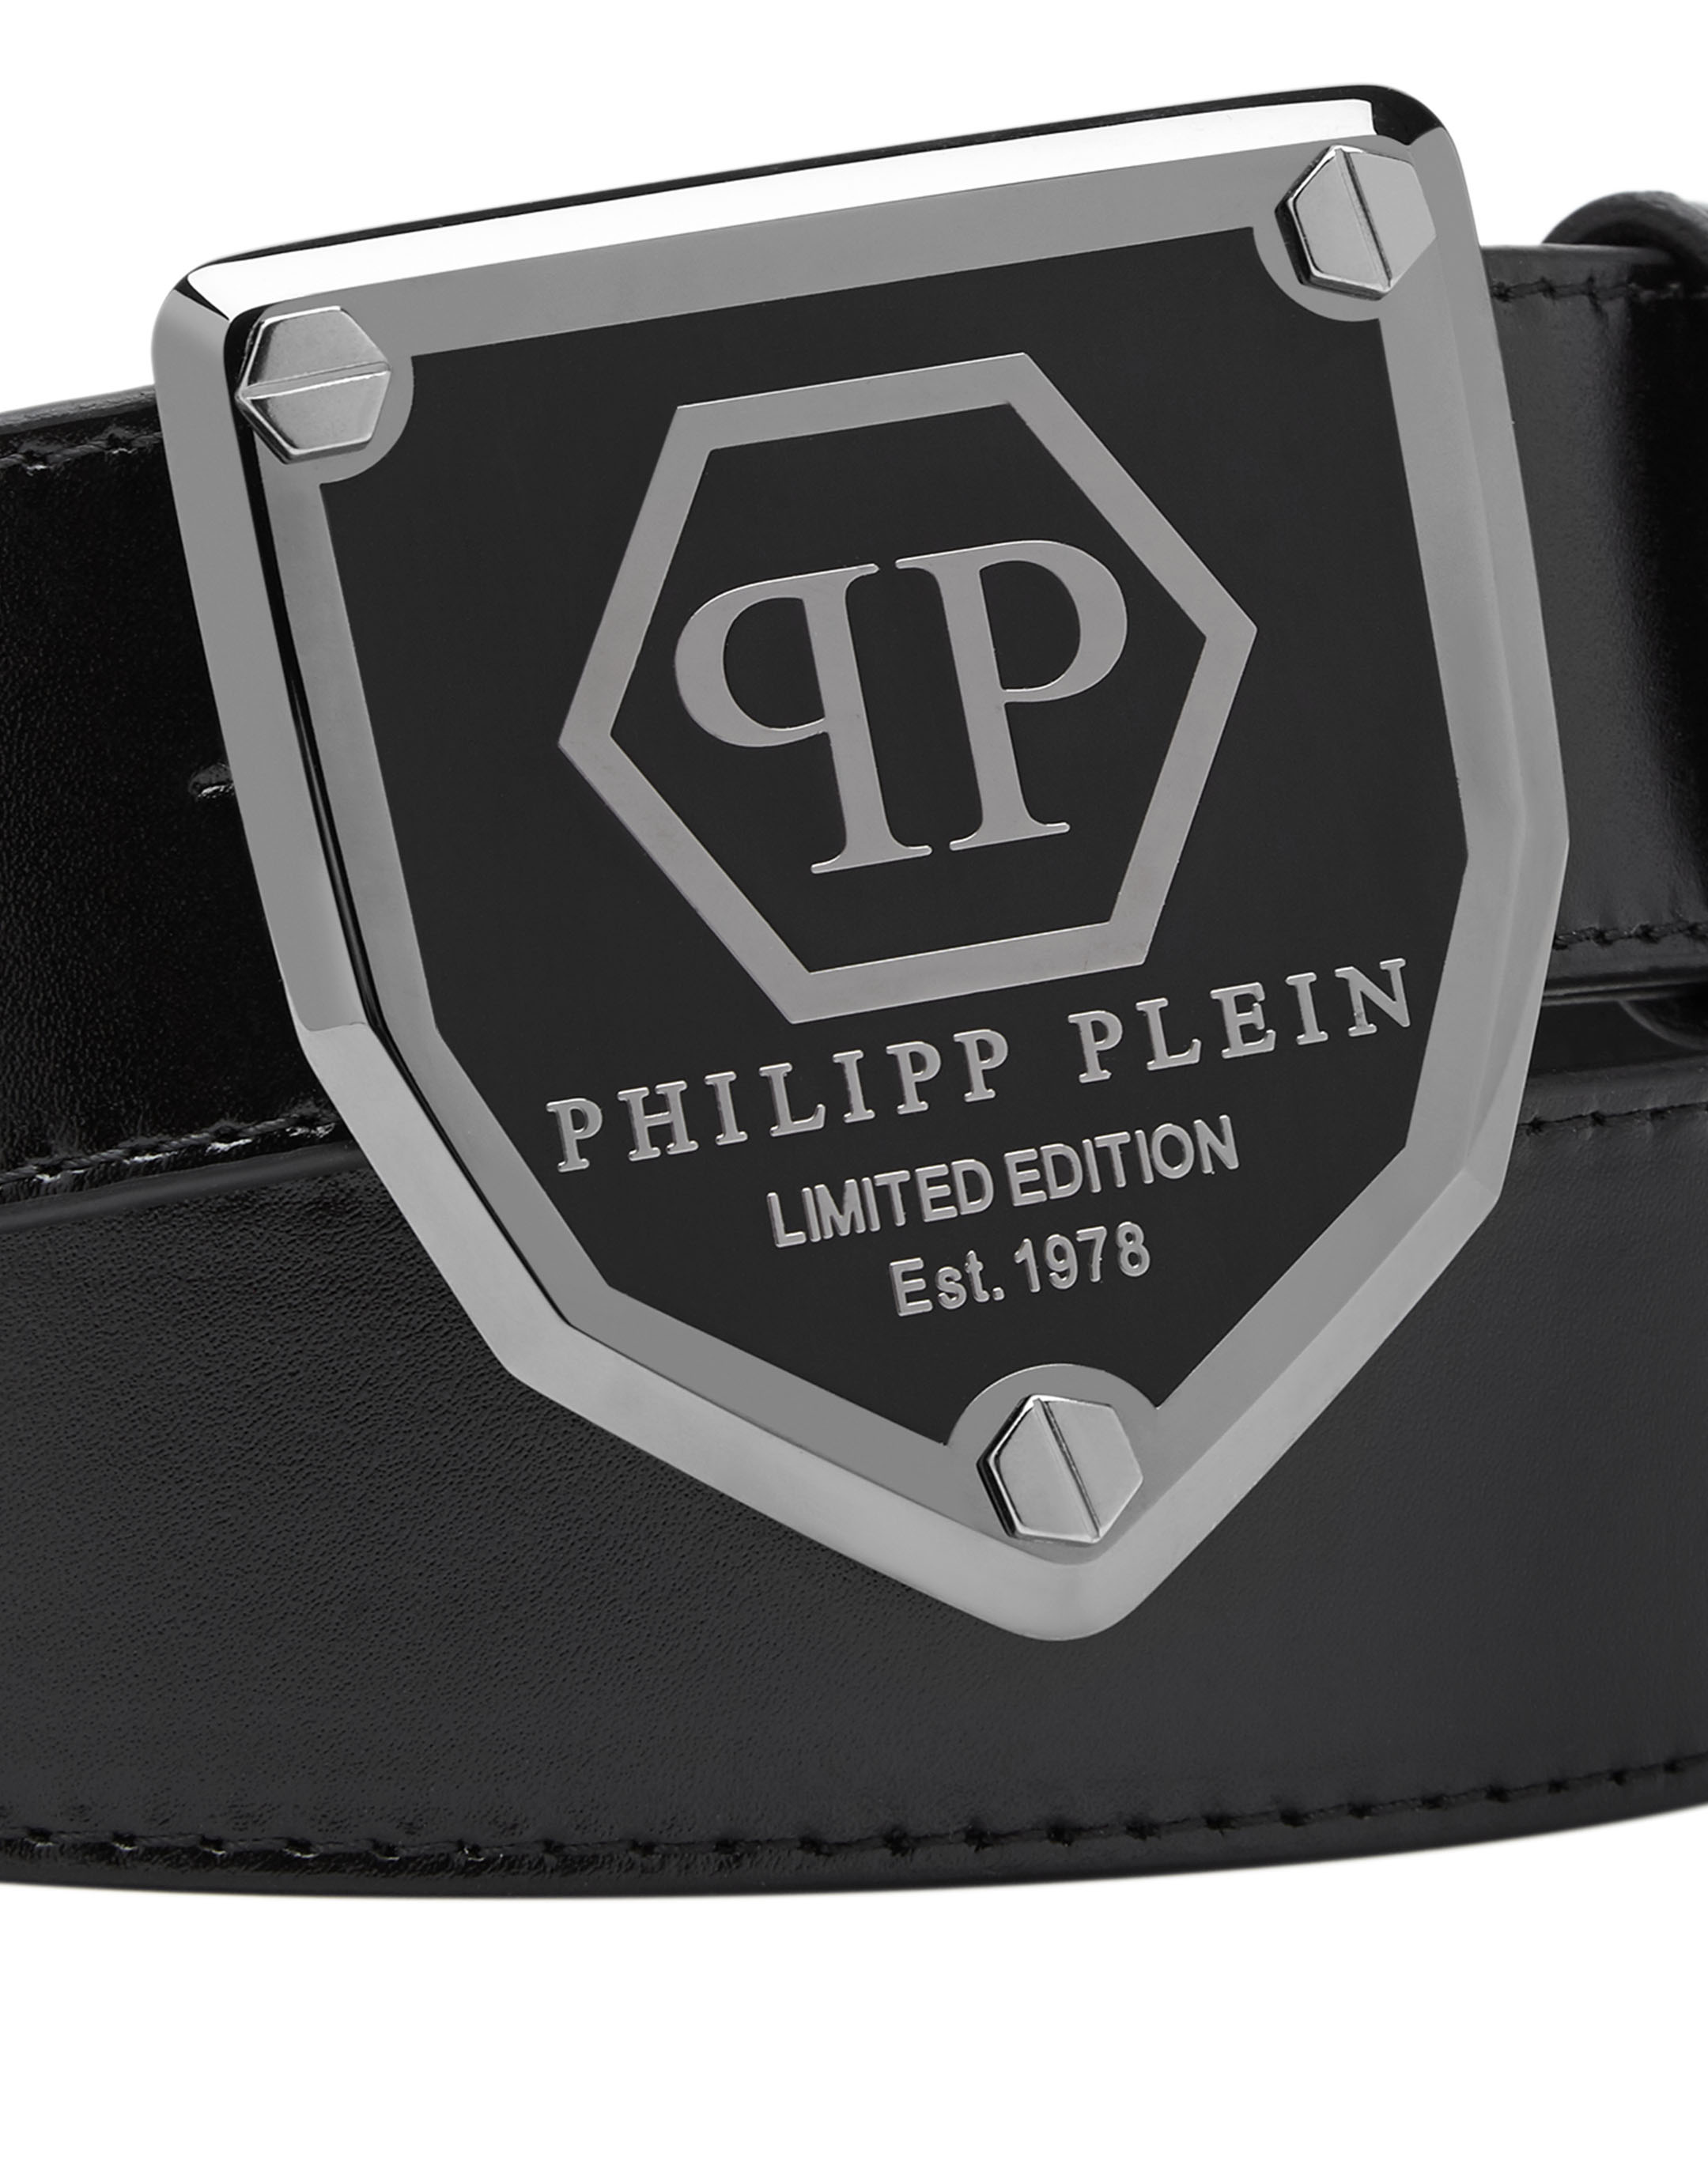 philipp plein est 1978 limited edition switzerland belt